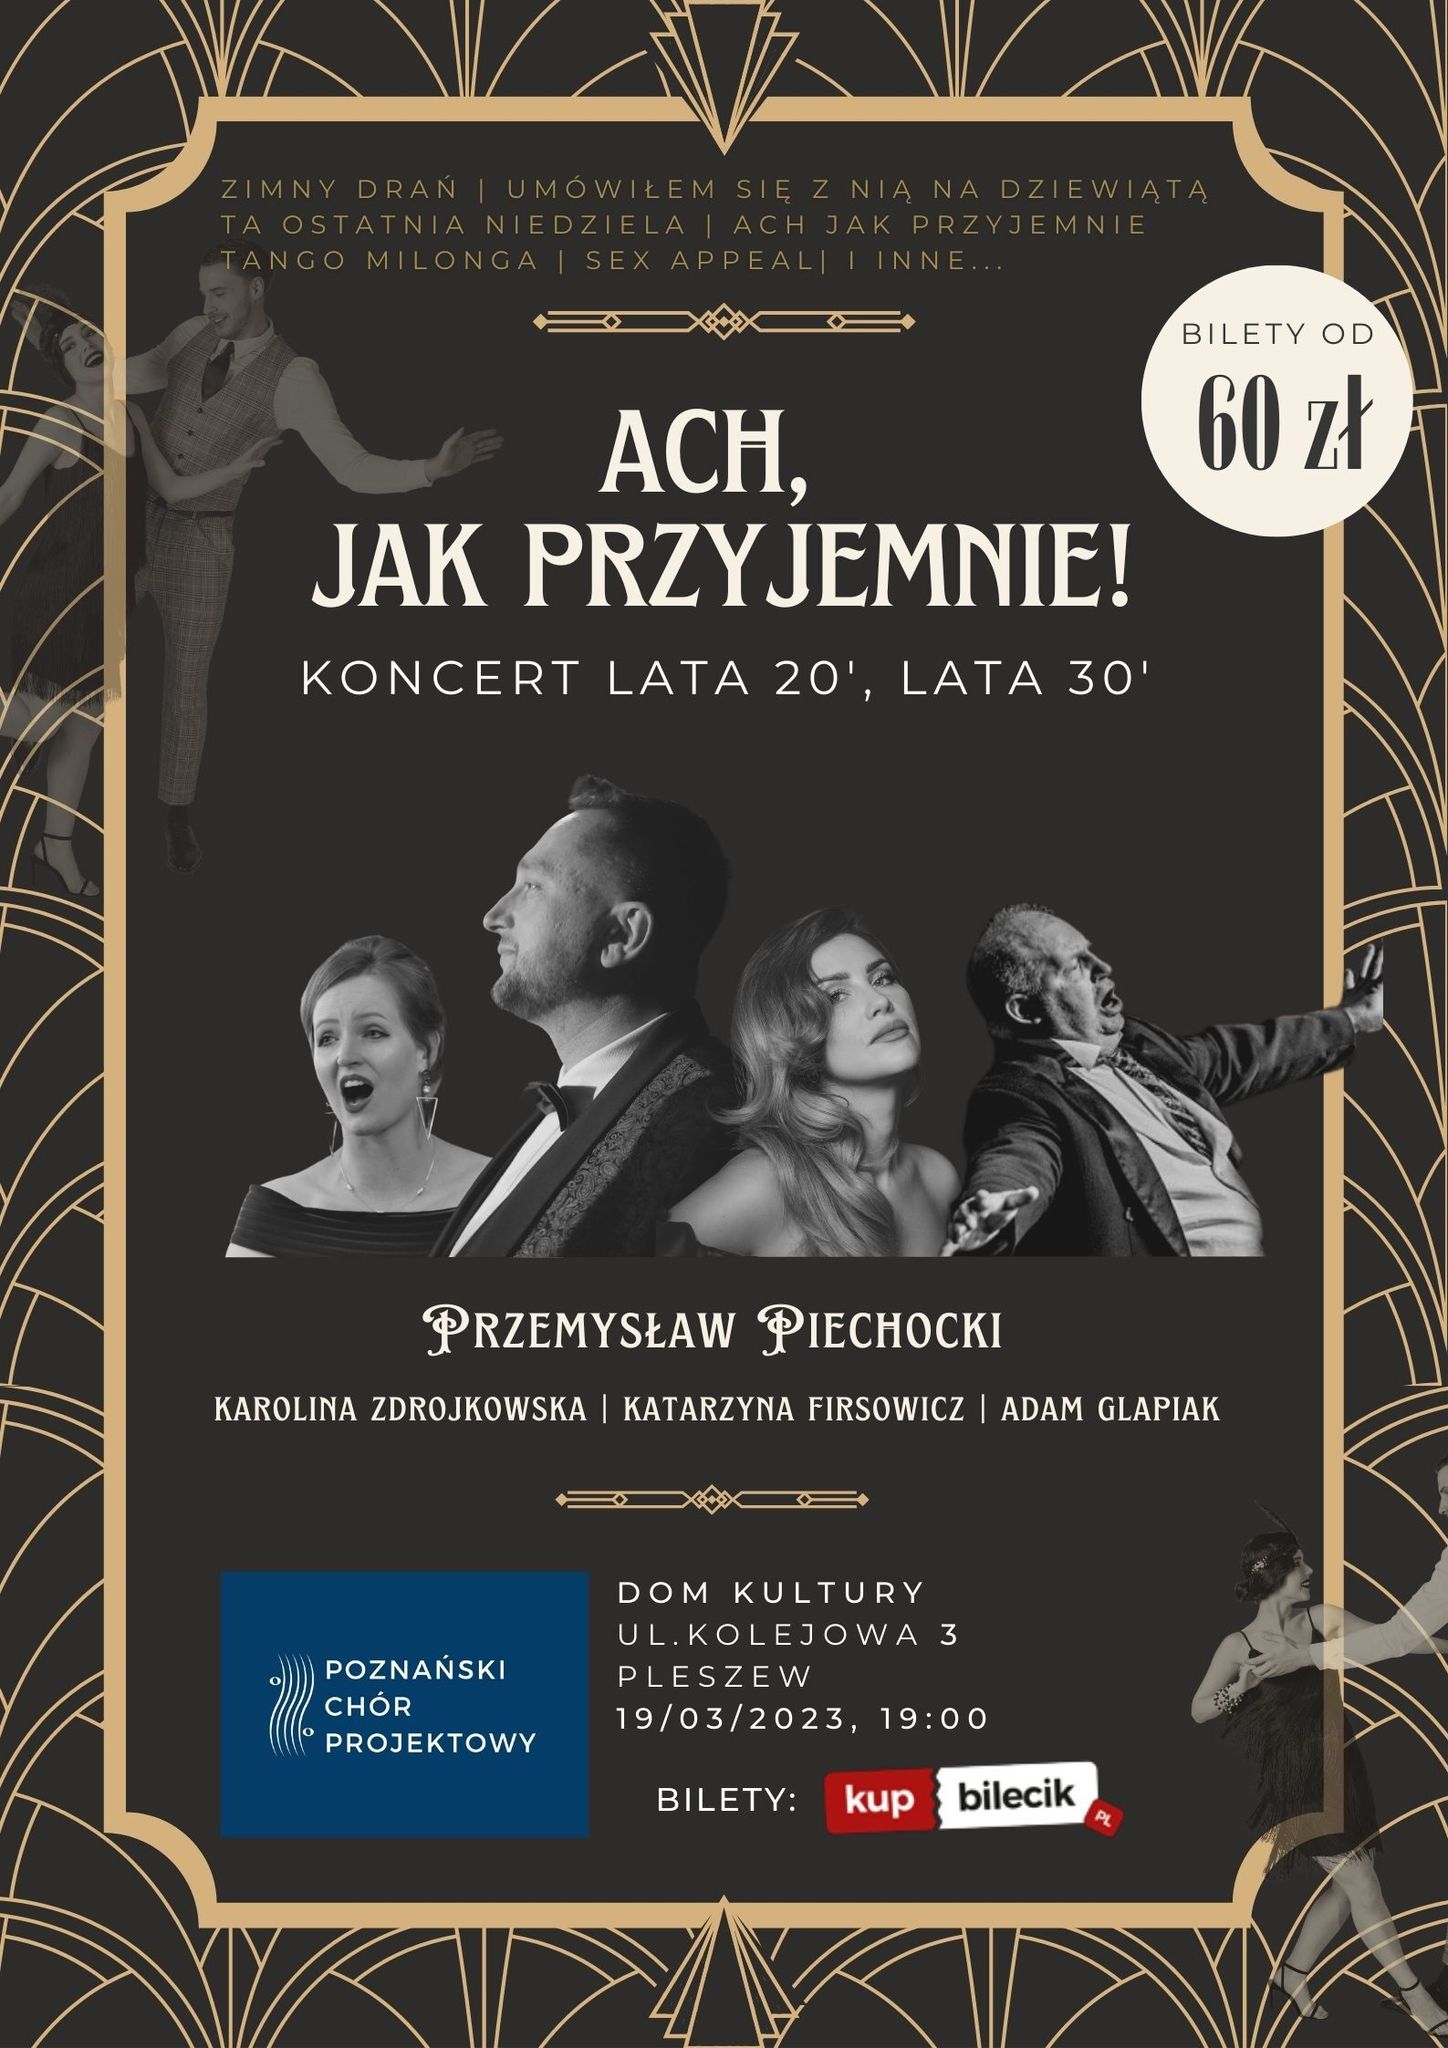 Plakat Koncertu organizowanego przez Poznański Chór Projektowy "Ach, jak przyjemnie - koncert lata 20', lata 30' " odbywającego się w Zajezdni Kultury w Pleszewie 19 marca 2023 roku o godzinie 19:00